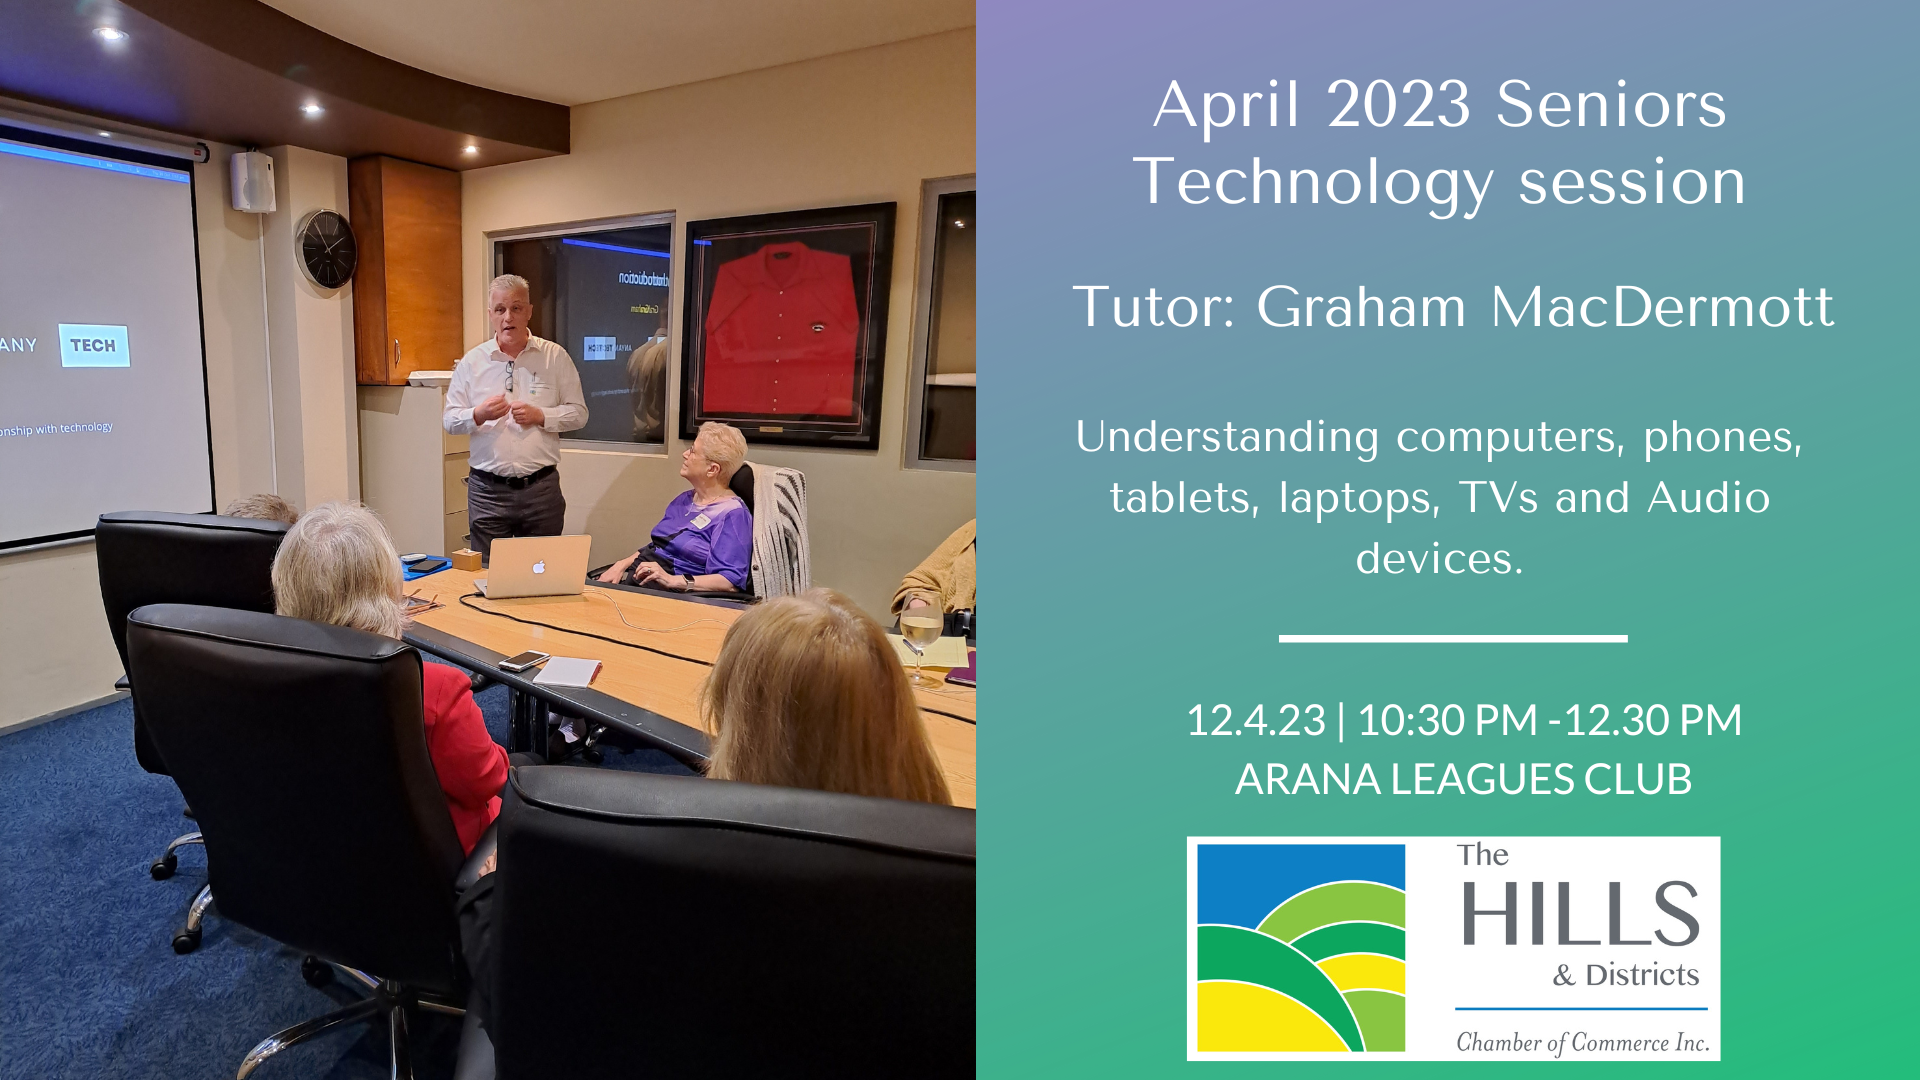 Seniors Event » April 2023 Seniors Technology Session